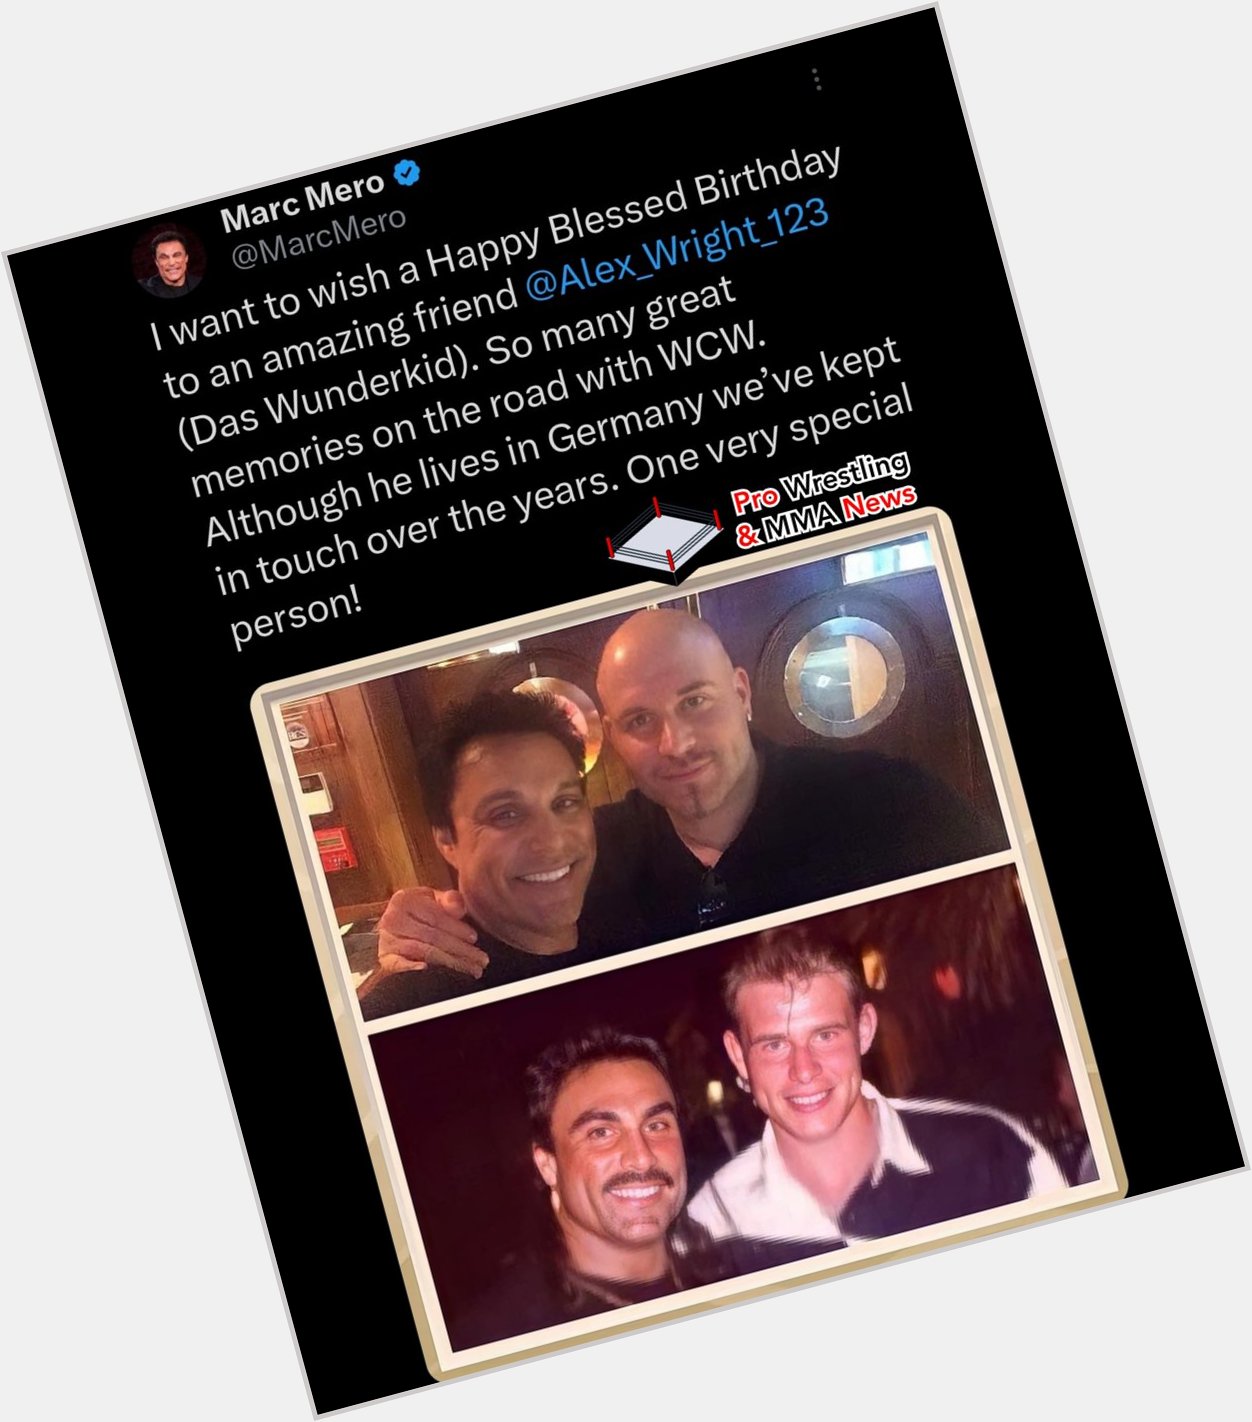 Former star Marc Mero wishing former star Alex Wright a Happy Birthday . 